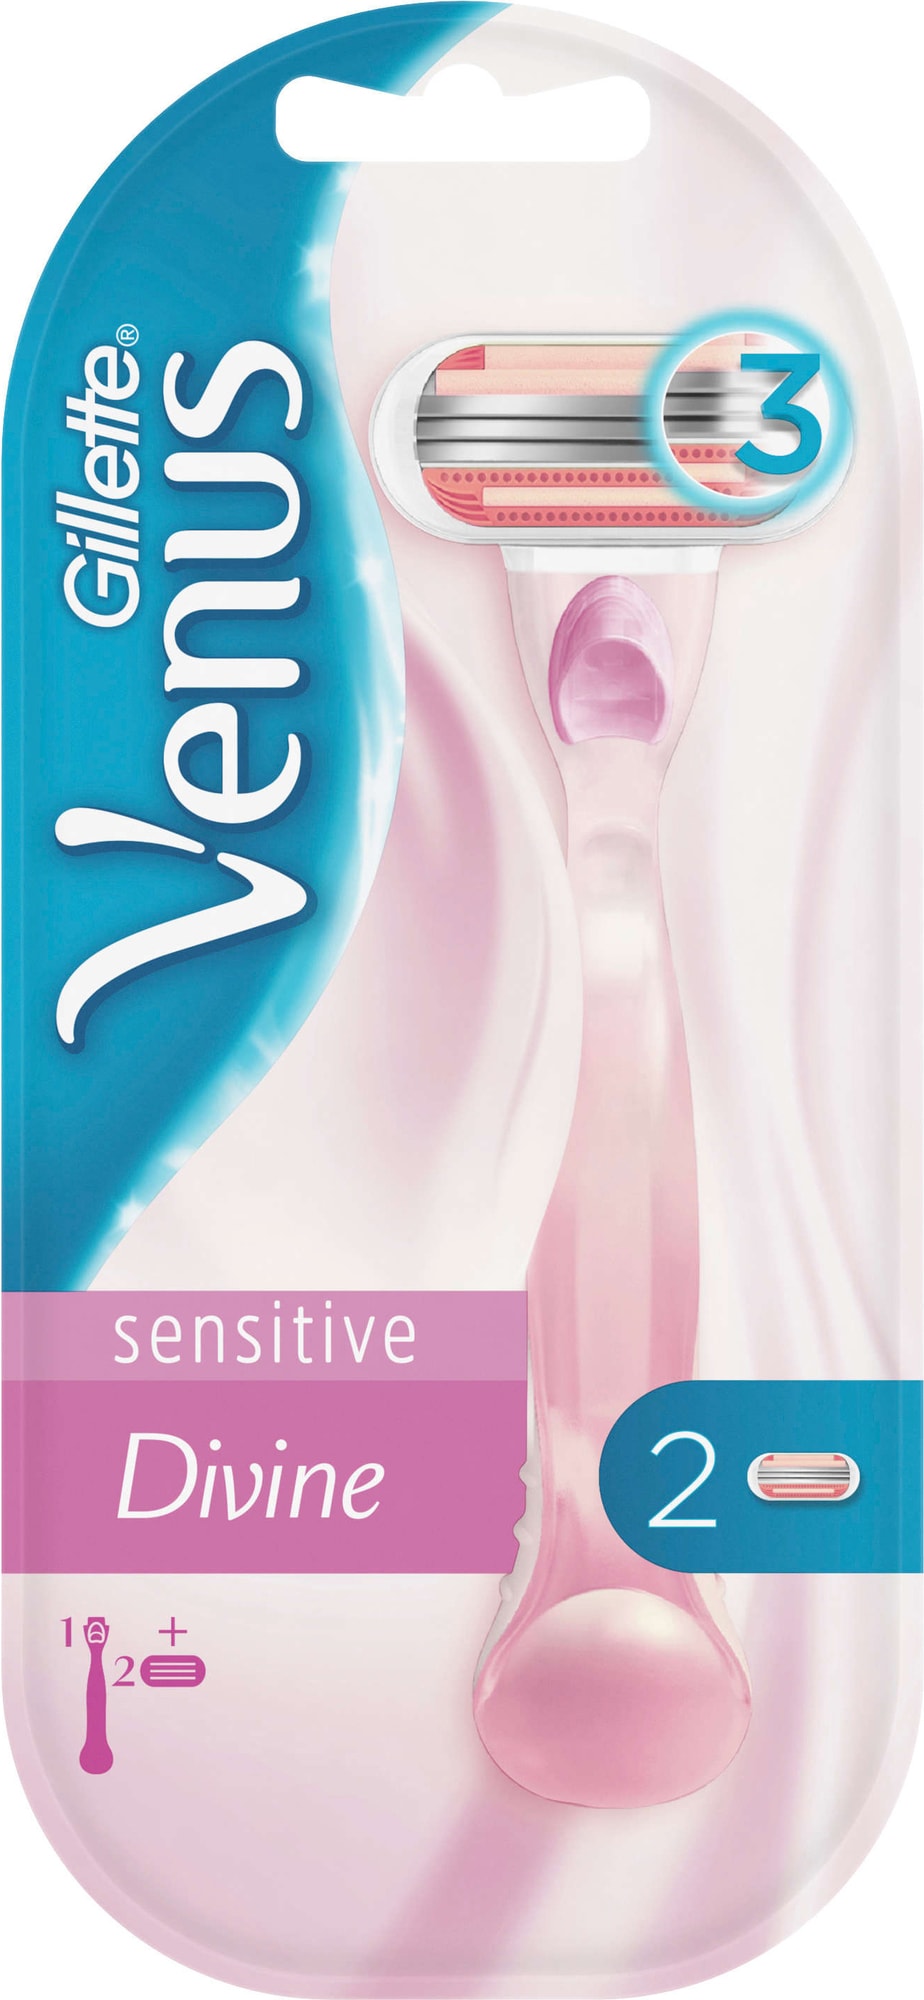 Gillette Venus Divine Sensitive skraber 364411 - Barberskraber ...